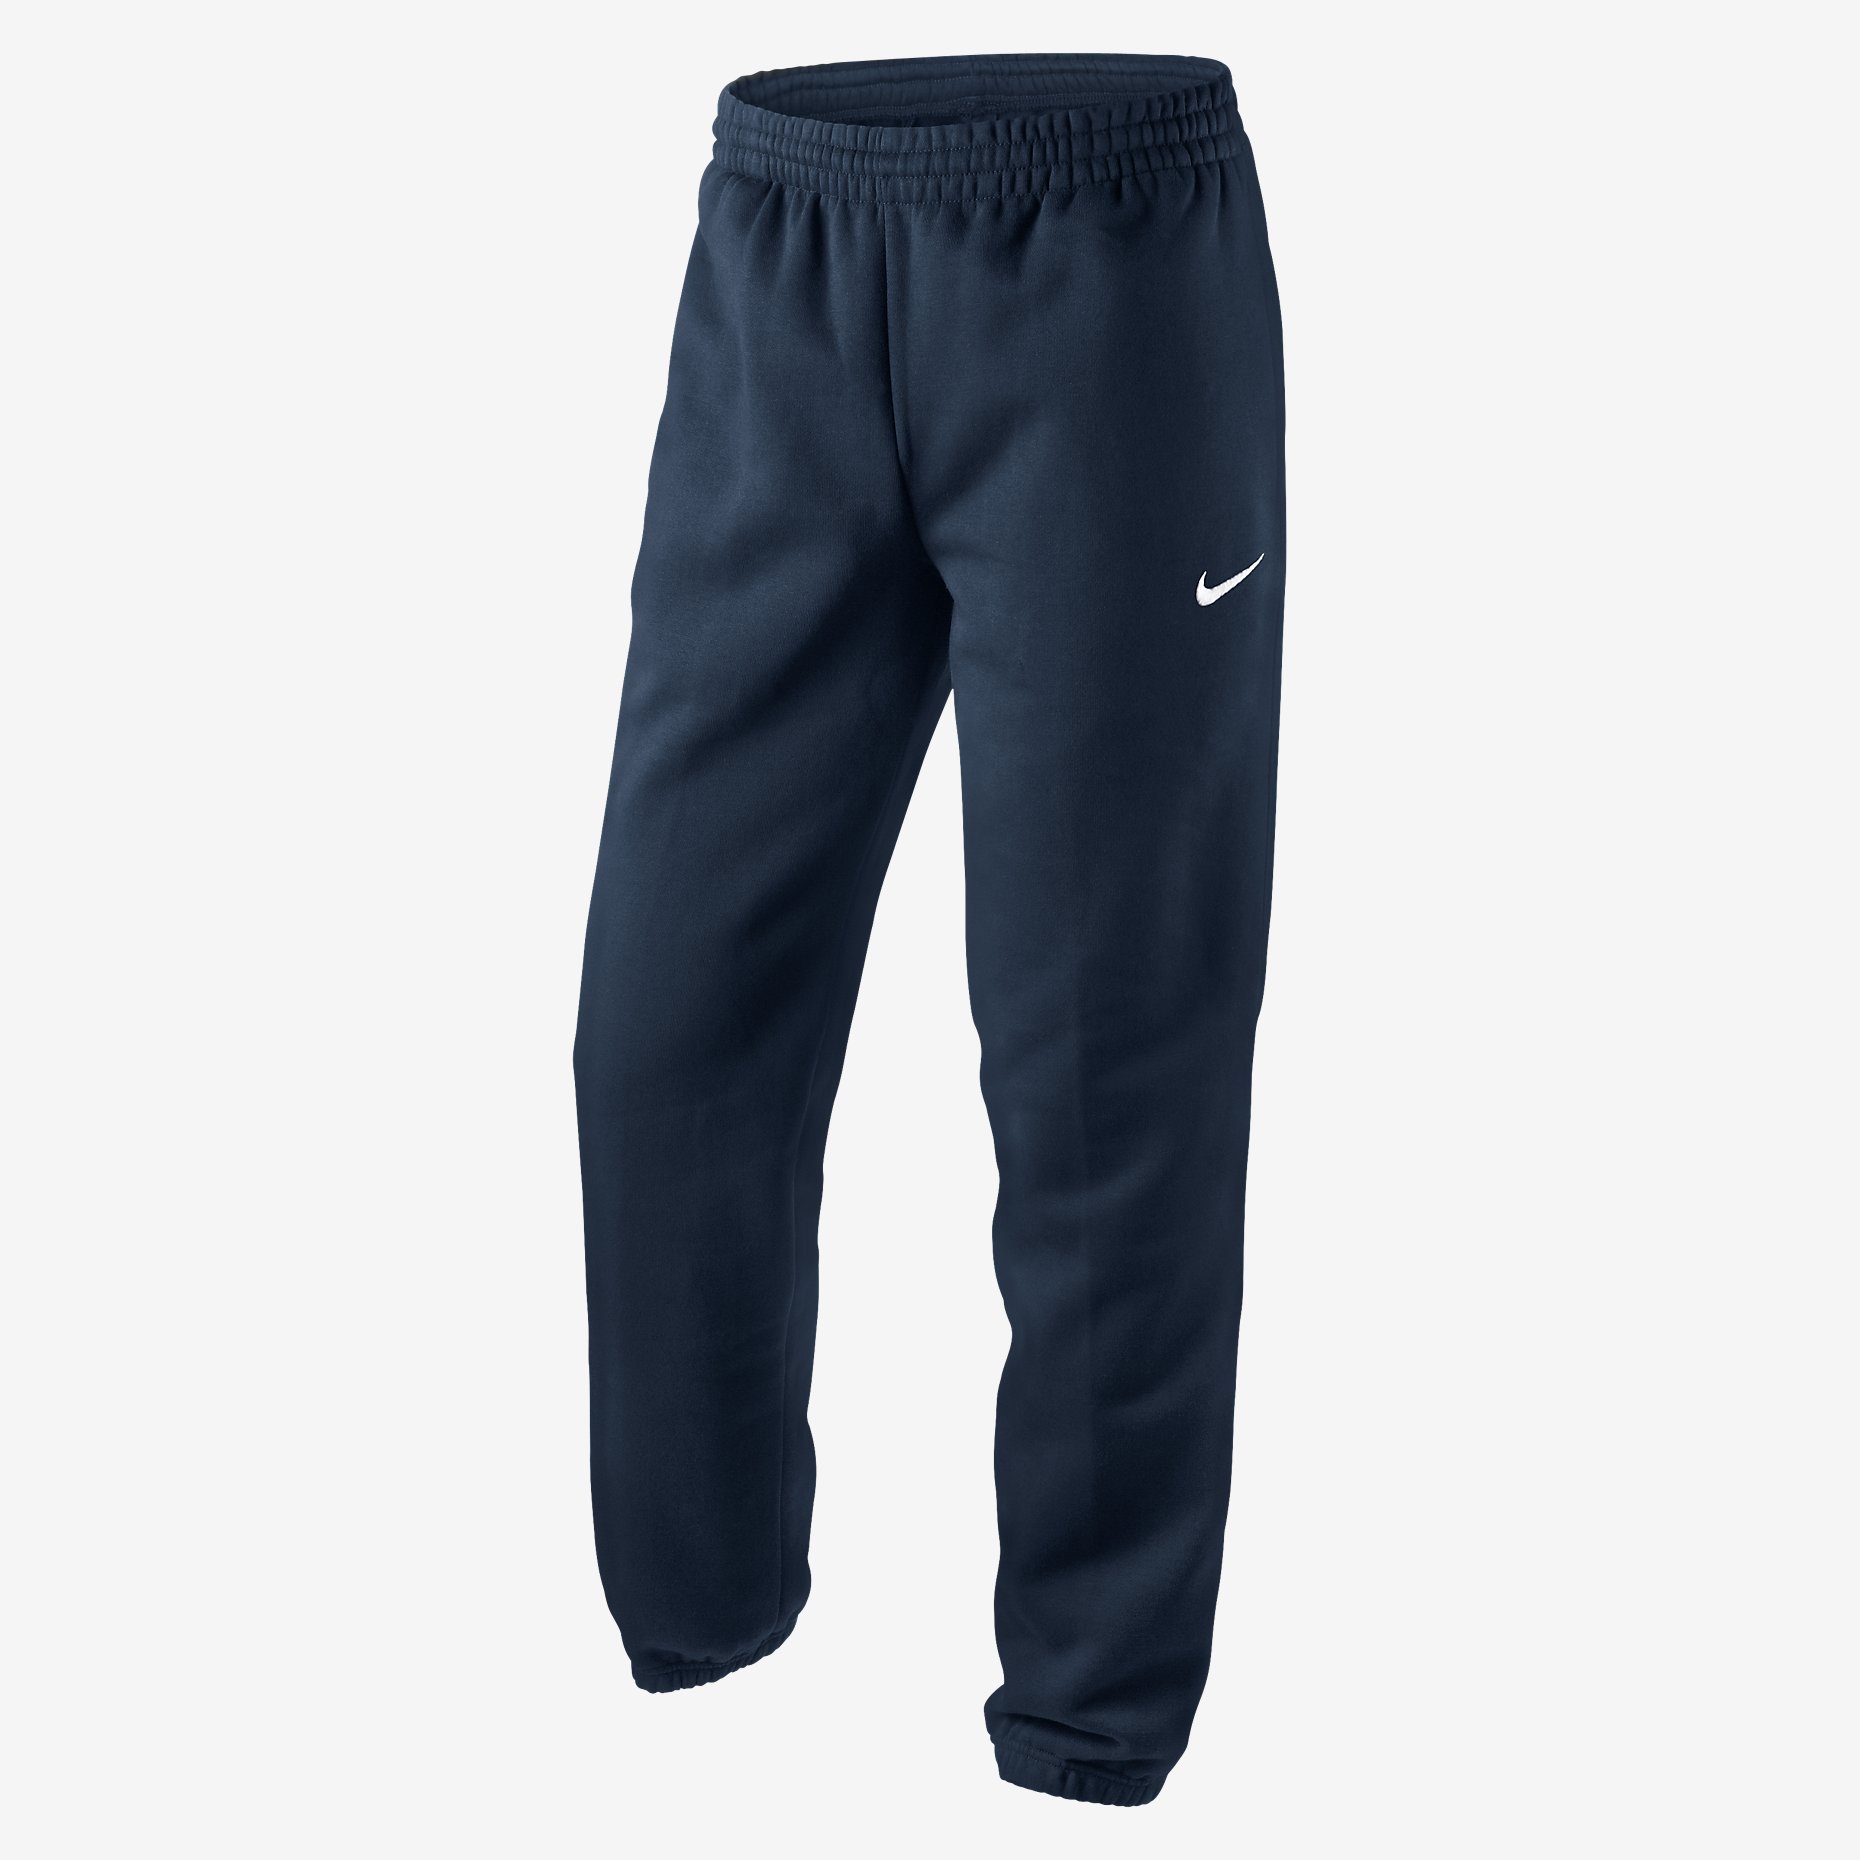 Nike Men's Fleece Joggers Navy Blue Tracksuit Jogging Bottoms S M L XL ...